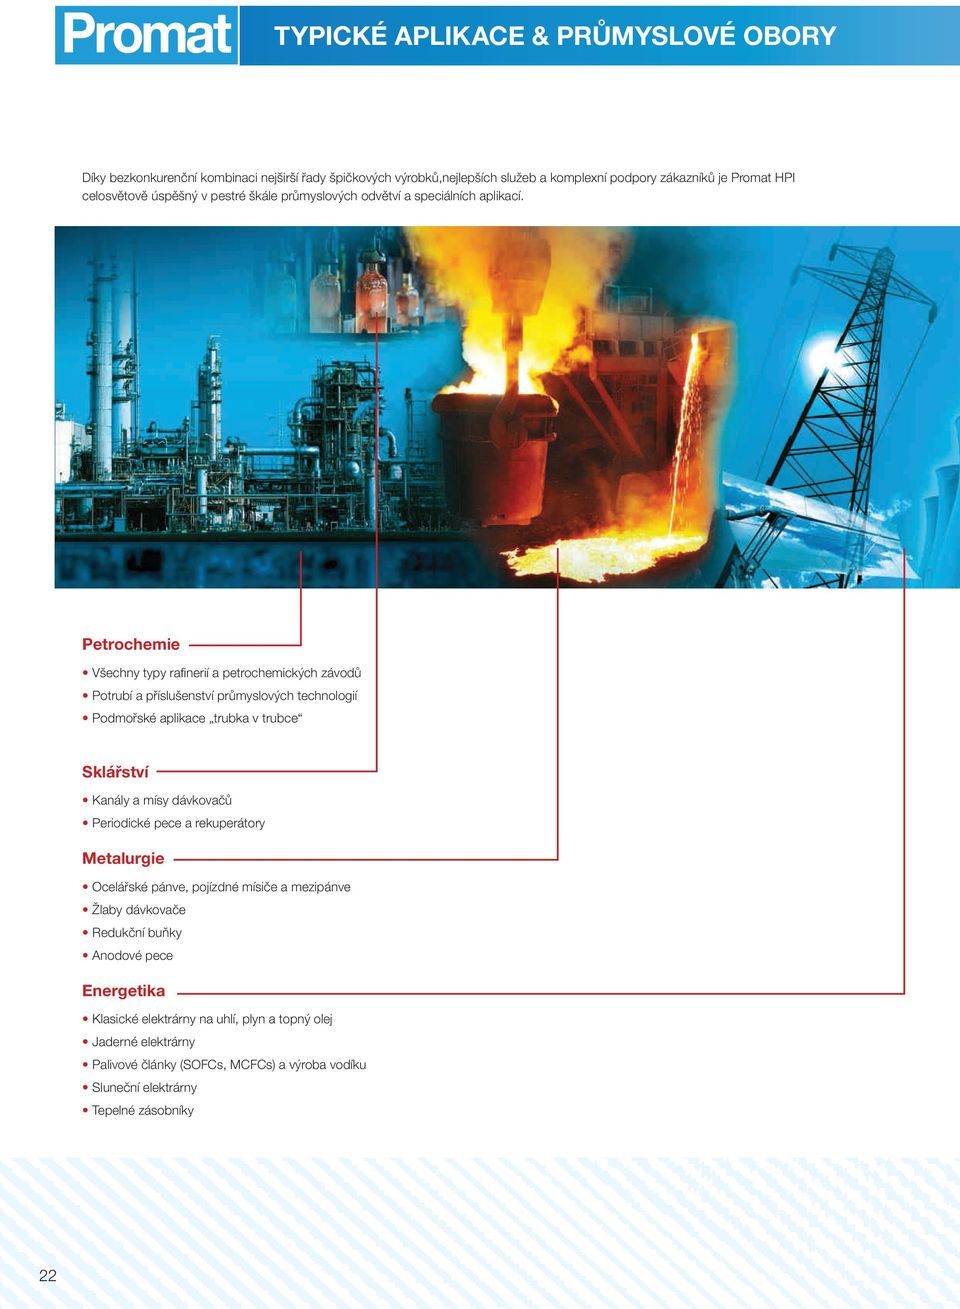 Petrochemie Všechny typy rafinerií a petrochemických závodů Potrubí a příslušenství průmyslových technologií Podmořské aplikace trubka v trubce Sklářství Kanály a mísy dávkovačů